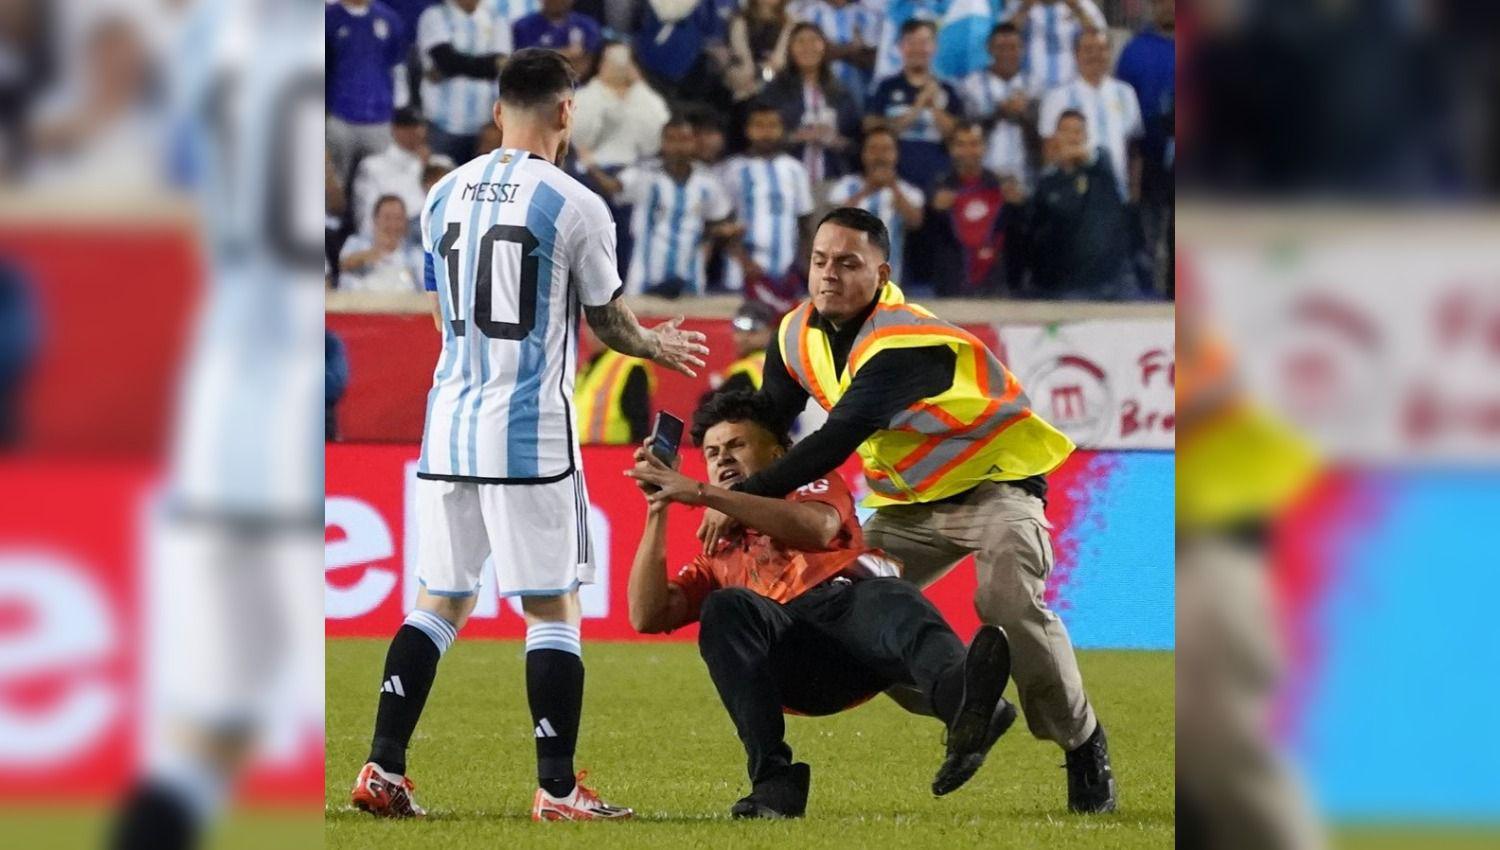 VIDEO- Tres intrusos burlaron la seguridad y se metieron a la cancha buscando el contacto con Messi